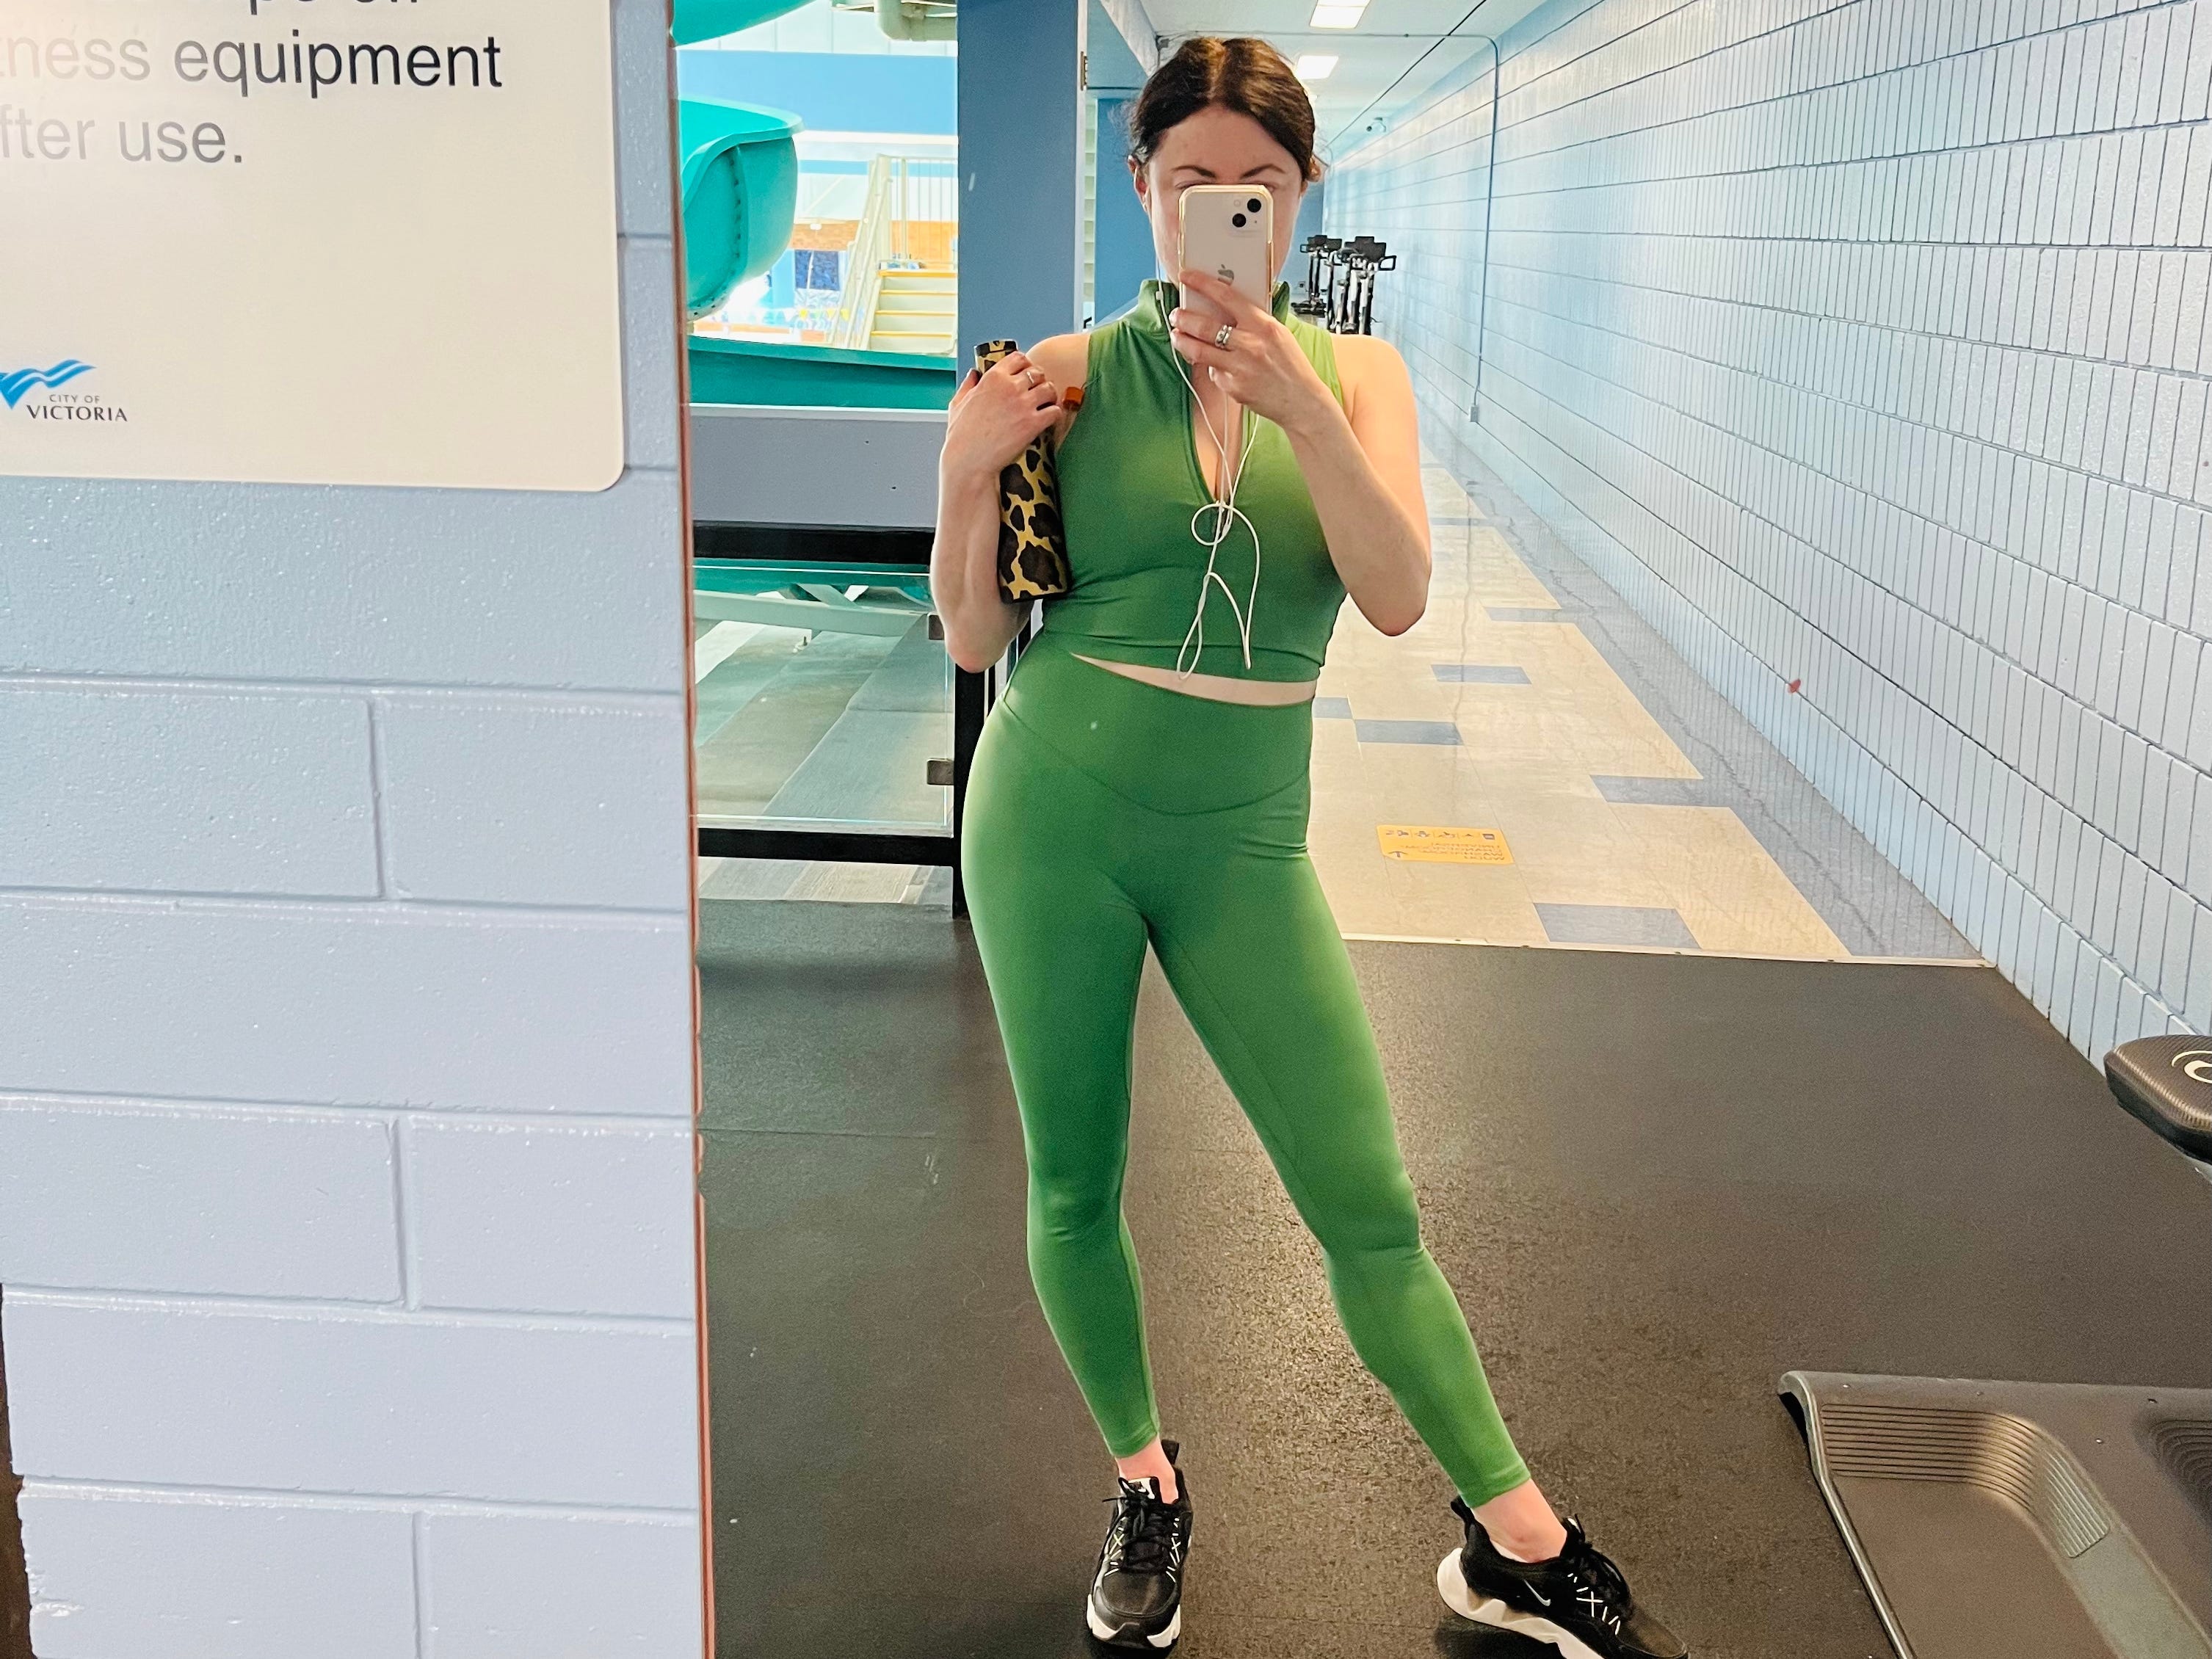 Simone macht ein Spiegel-Selfie, bereit für einen Yoga-Kurs im Fitnessstudio